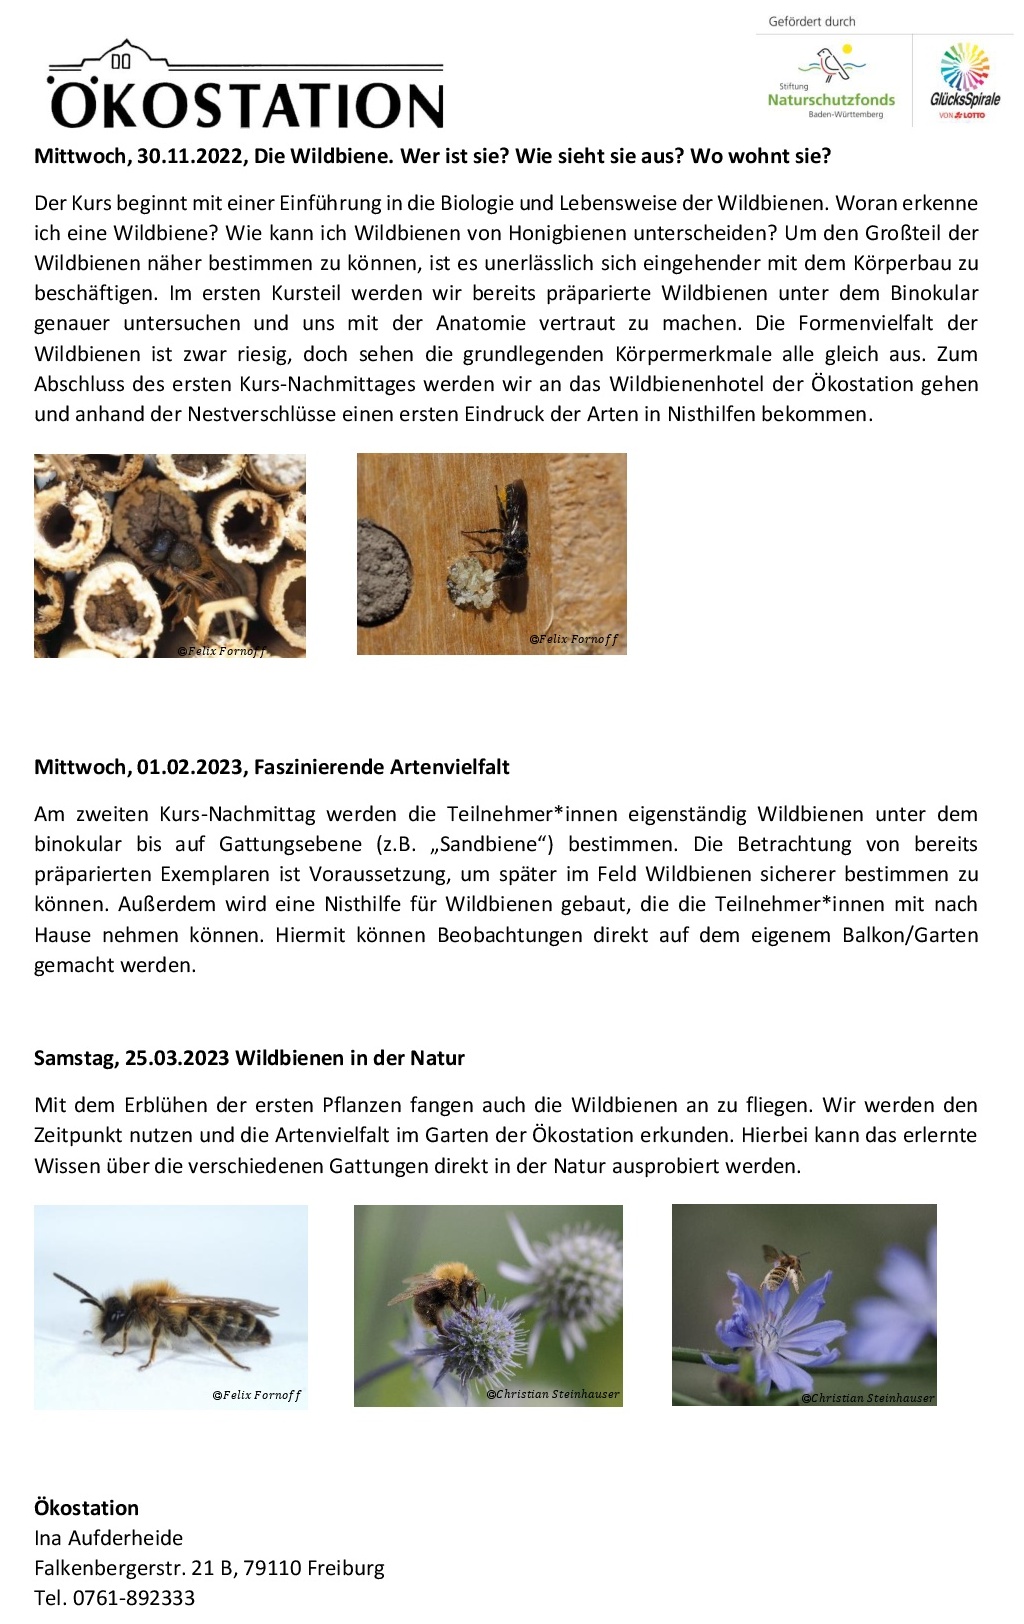 wildbienenkurs_oekostation_2022_detailankuendigung-002a.jpg